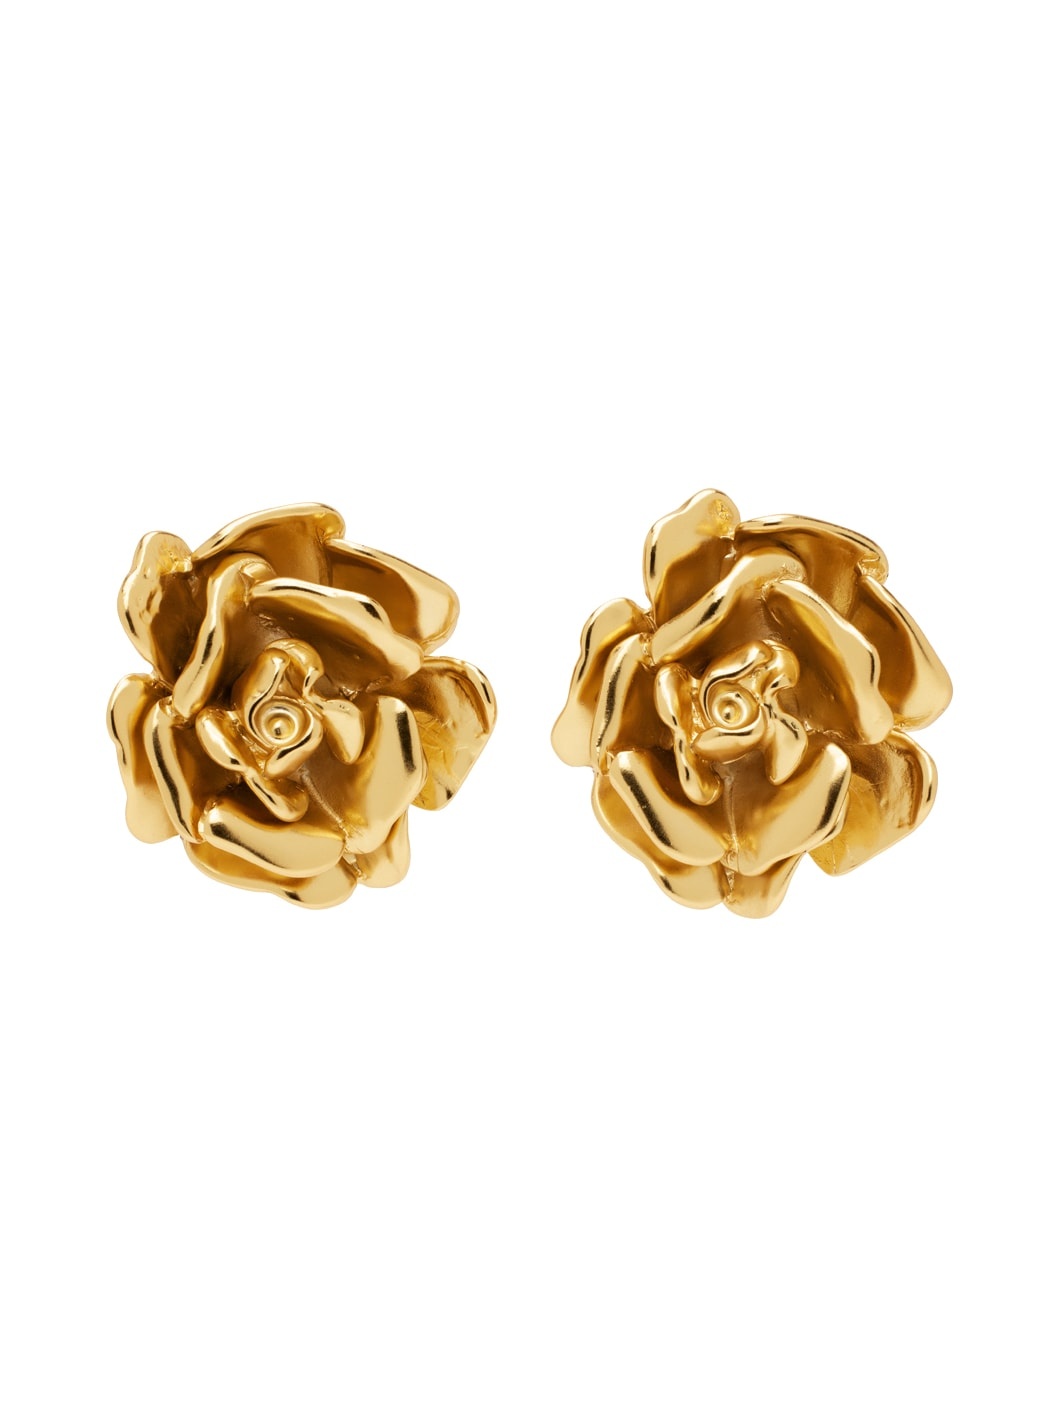 Gold Rose Earrings - 1